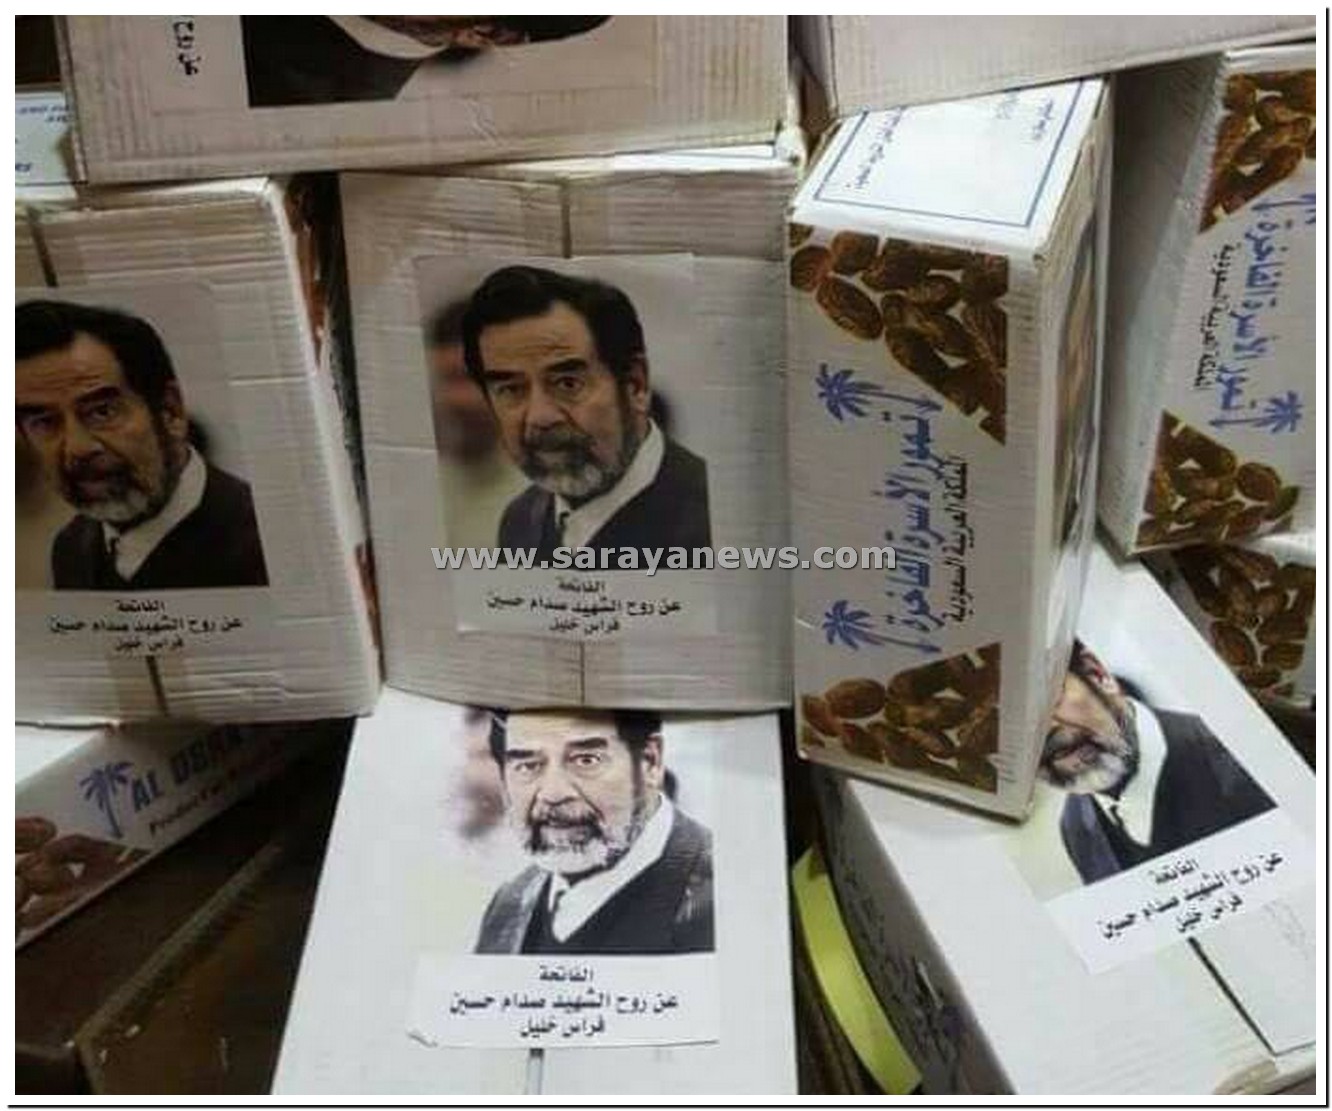 بالصور ..  اردني يوزع تموراً عن روح الشهيد صدام حسين 